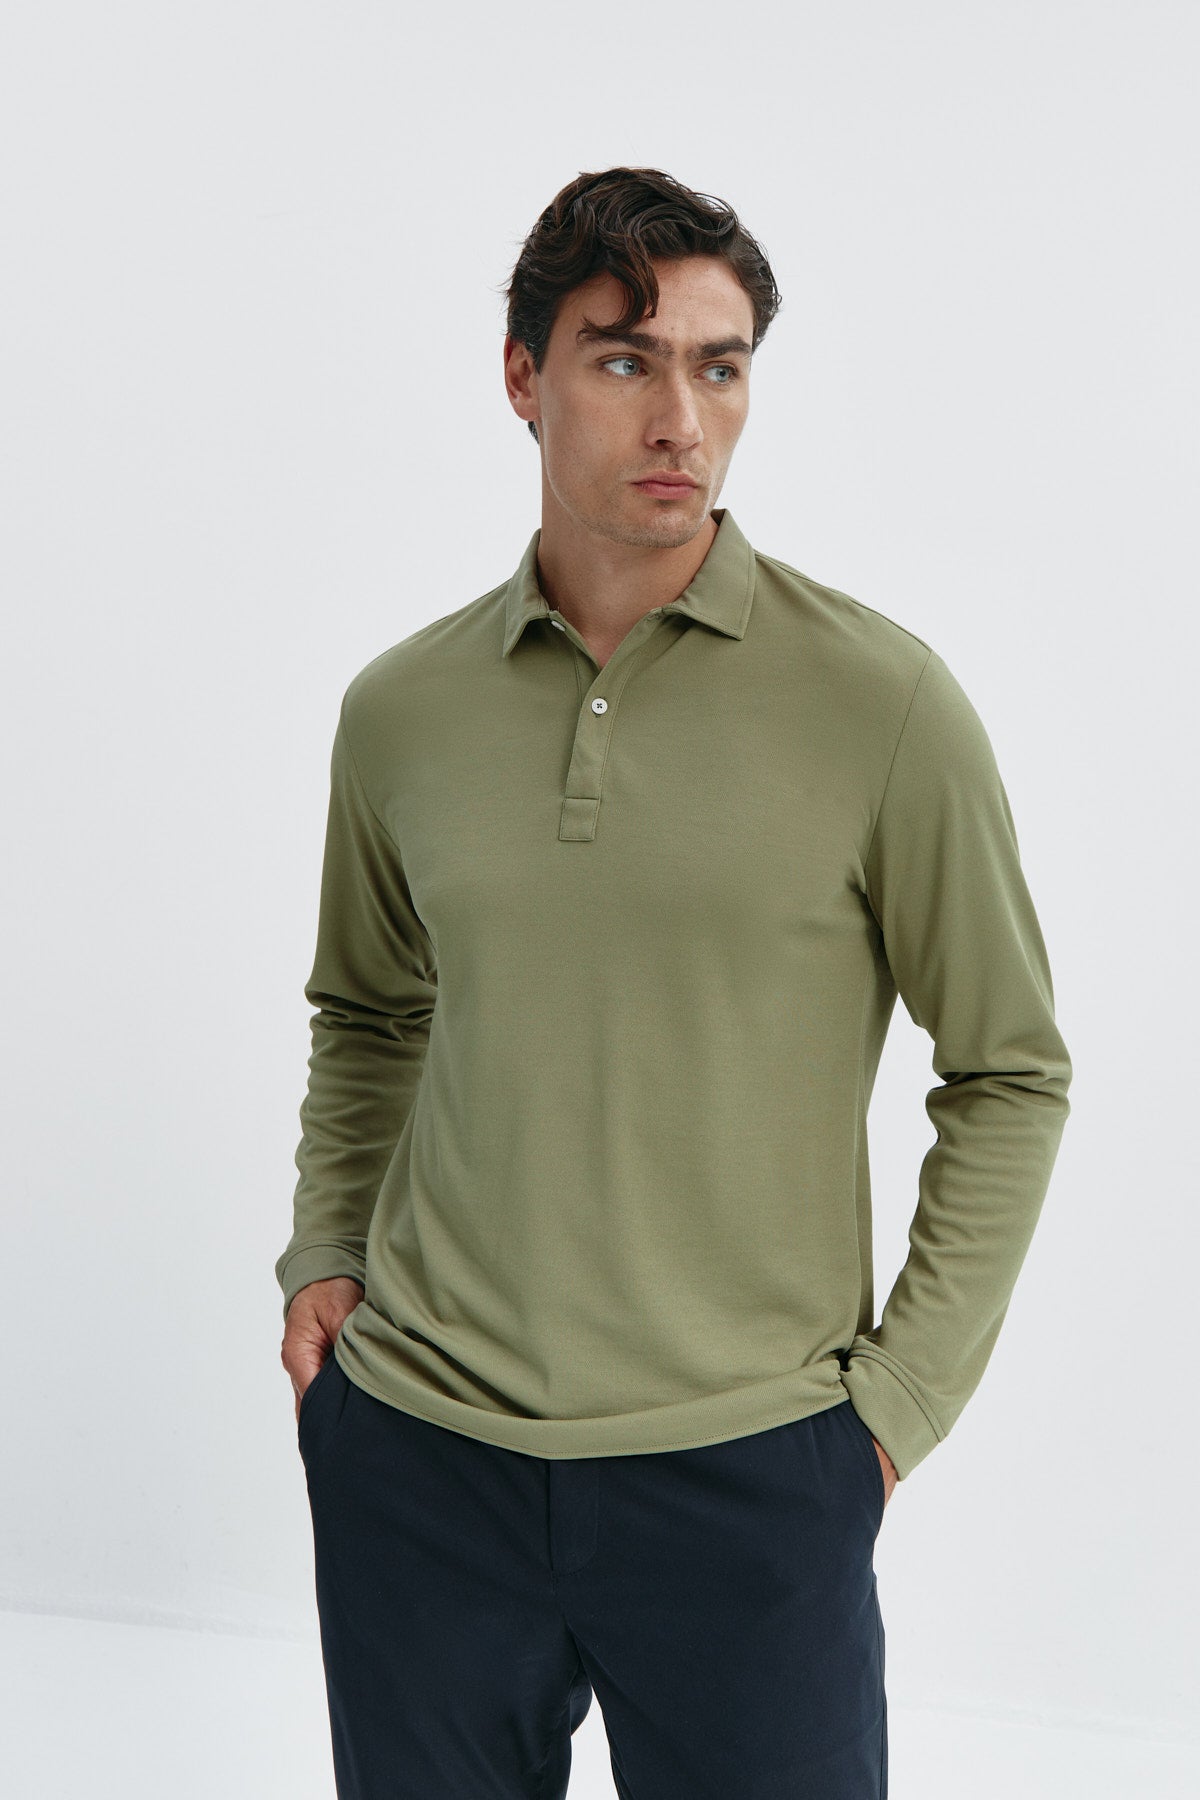 Polo de manga larga para hombre en color verde malaquita, sin arrugas, antimanchas, ligero y flexible para mayor comodidad. Foto frente